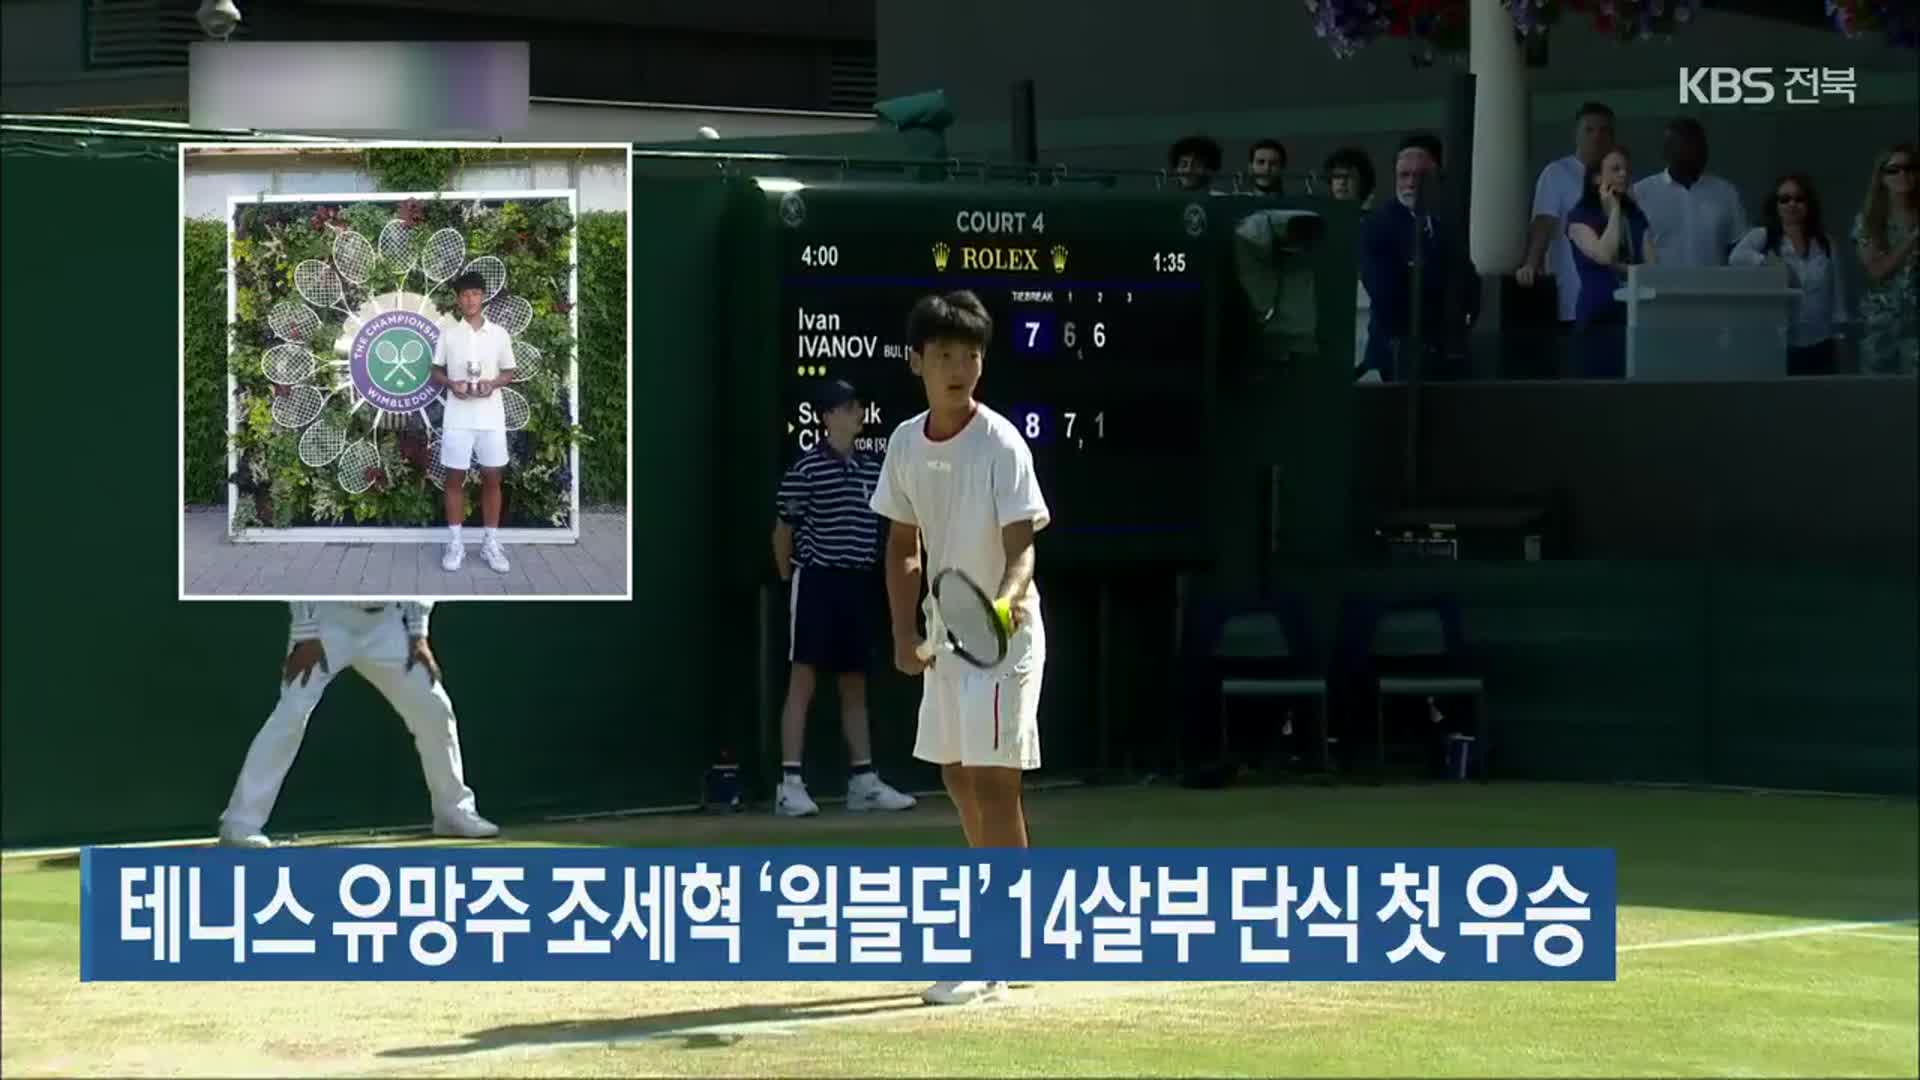 테니스 유망주 조세혁 ‘윔블던’ 14살부 단식 첫 우승